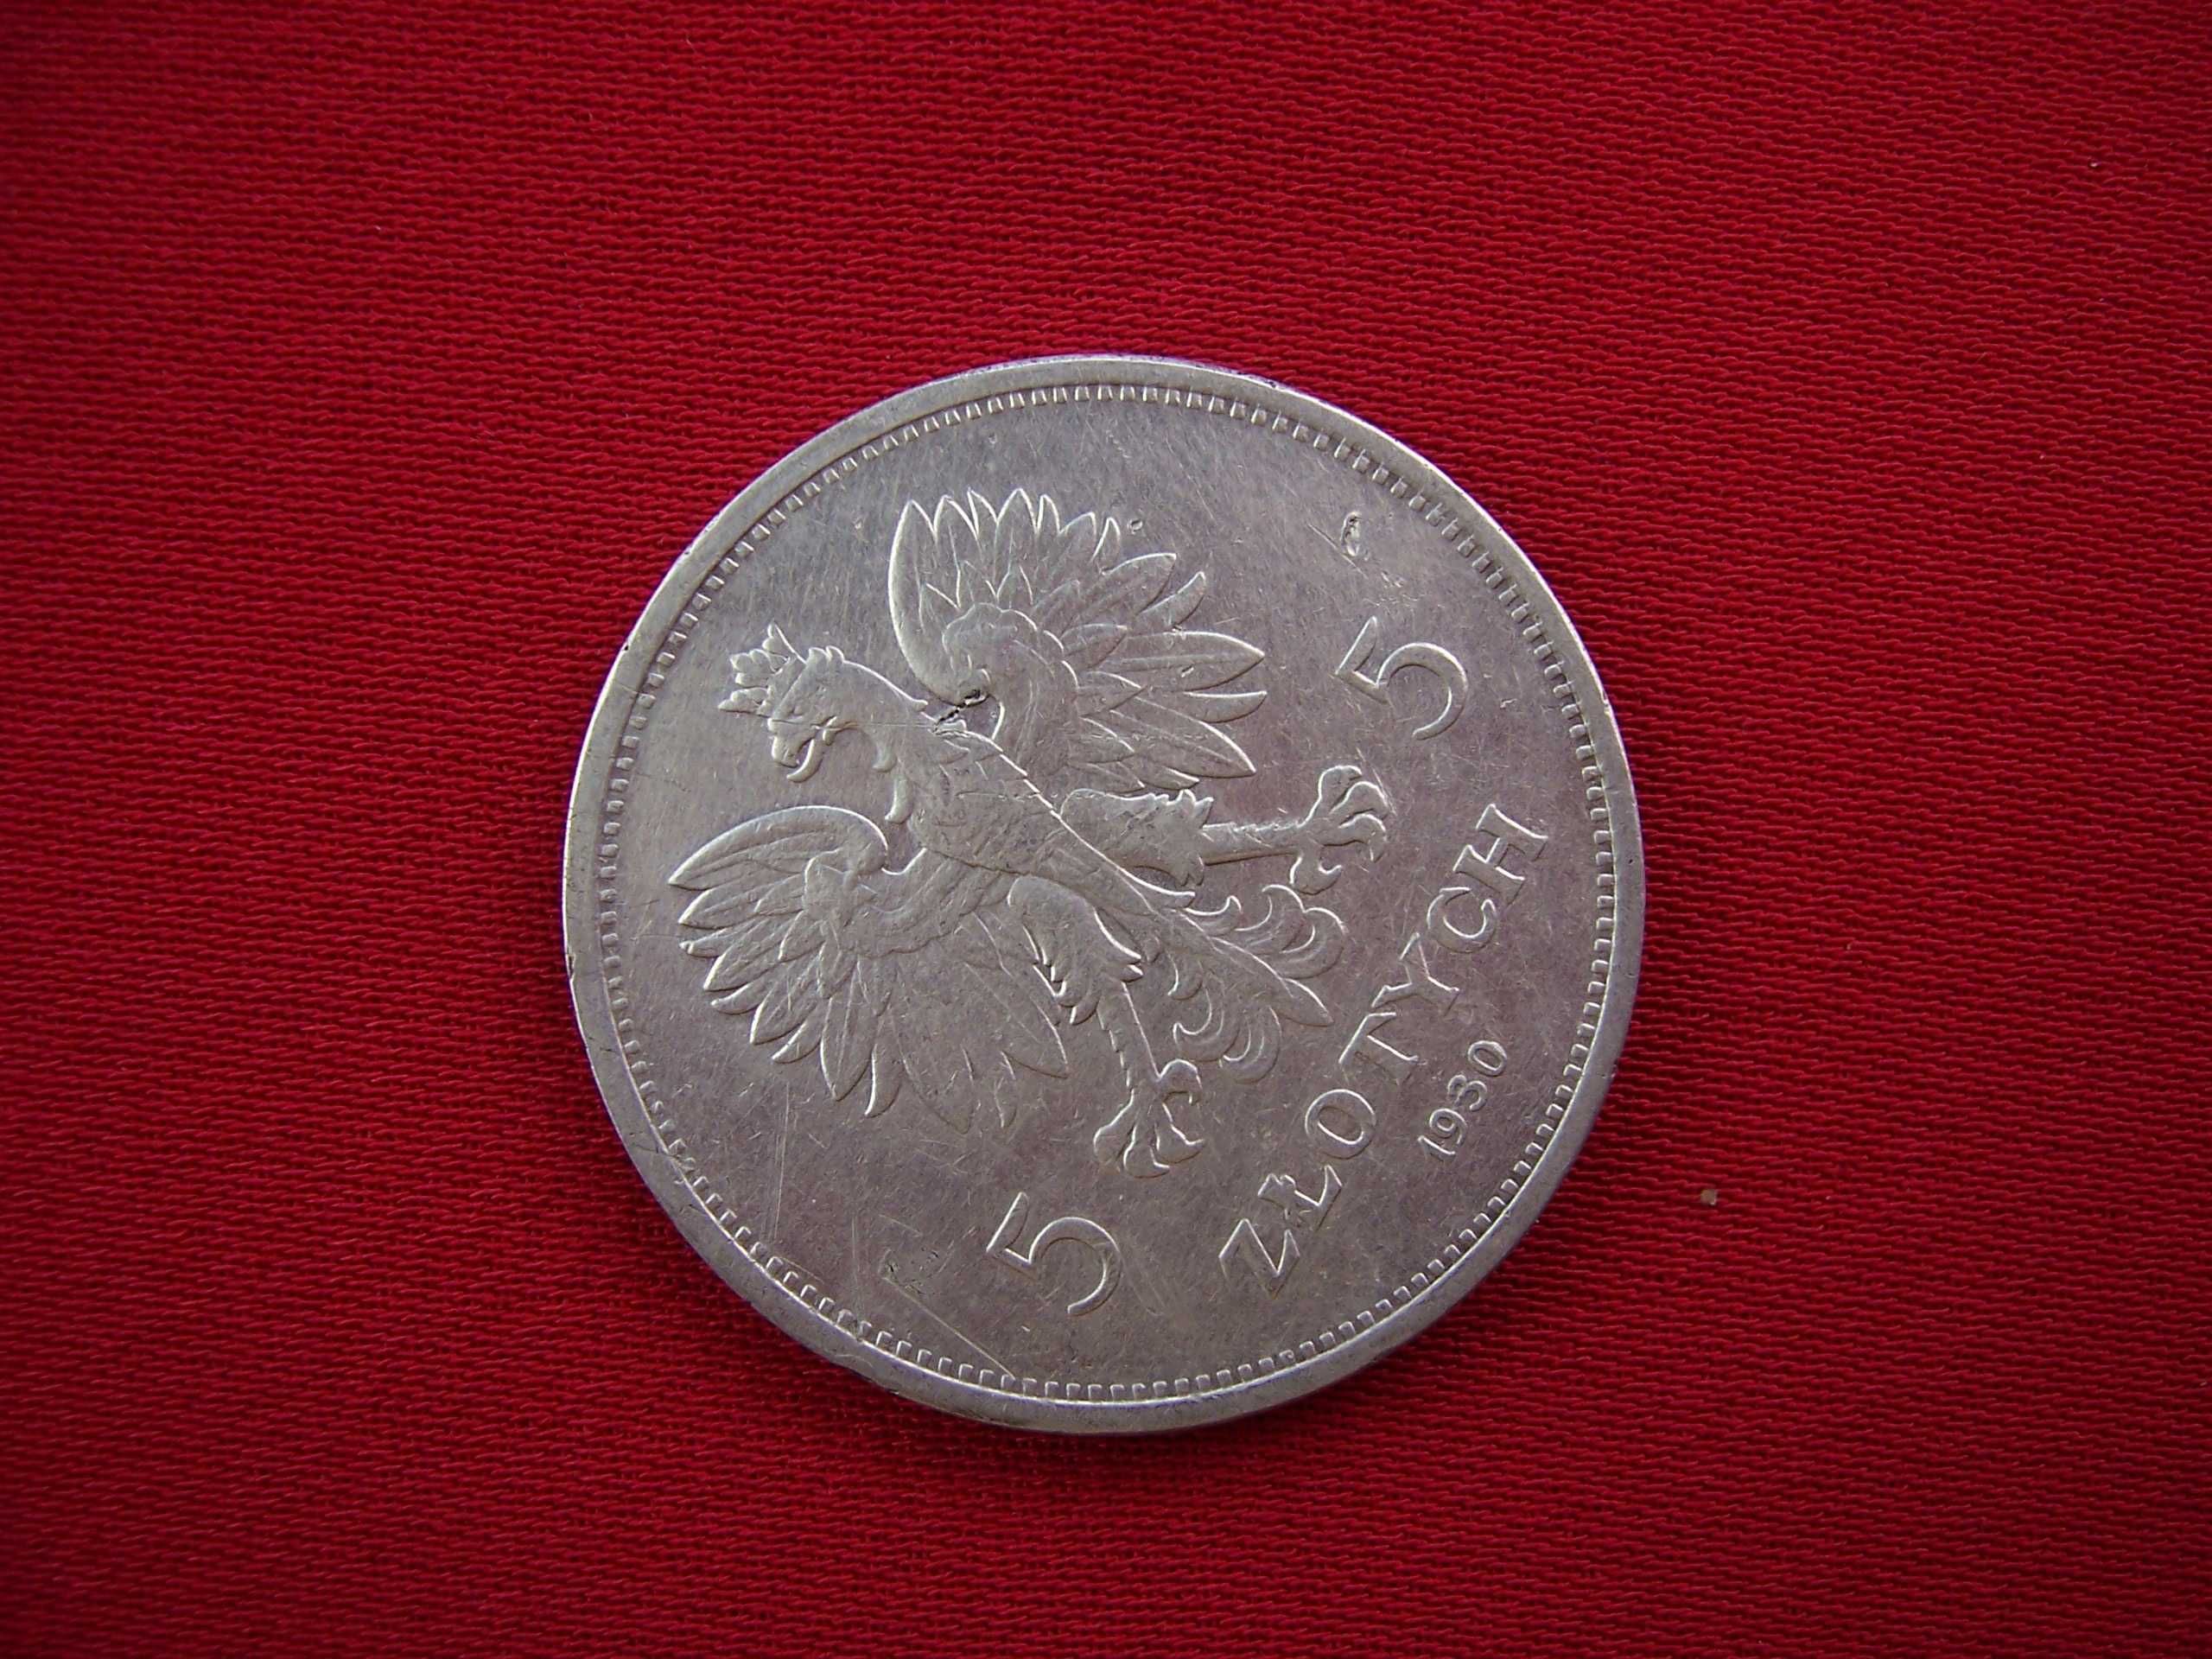 II RP Polska moneta 5 zł 1930 rok Sztandar nr 10